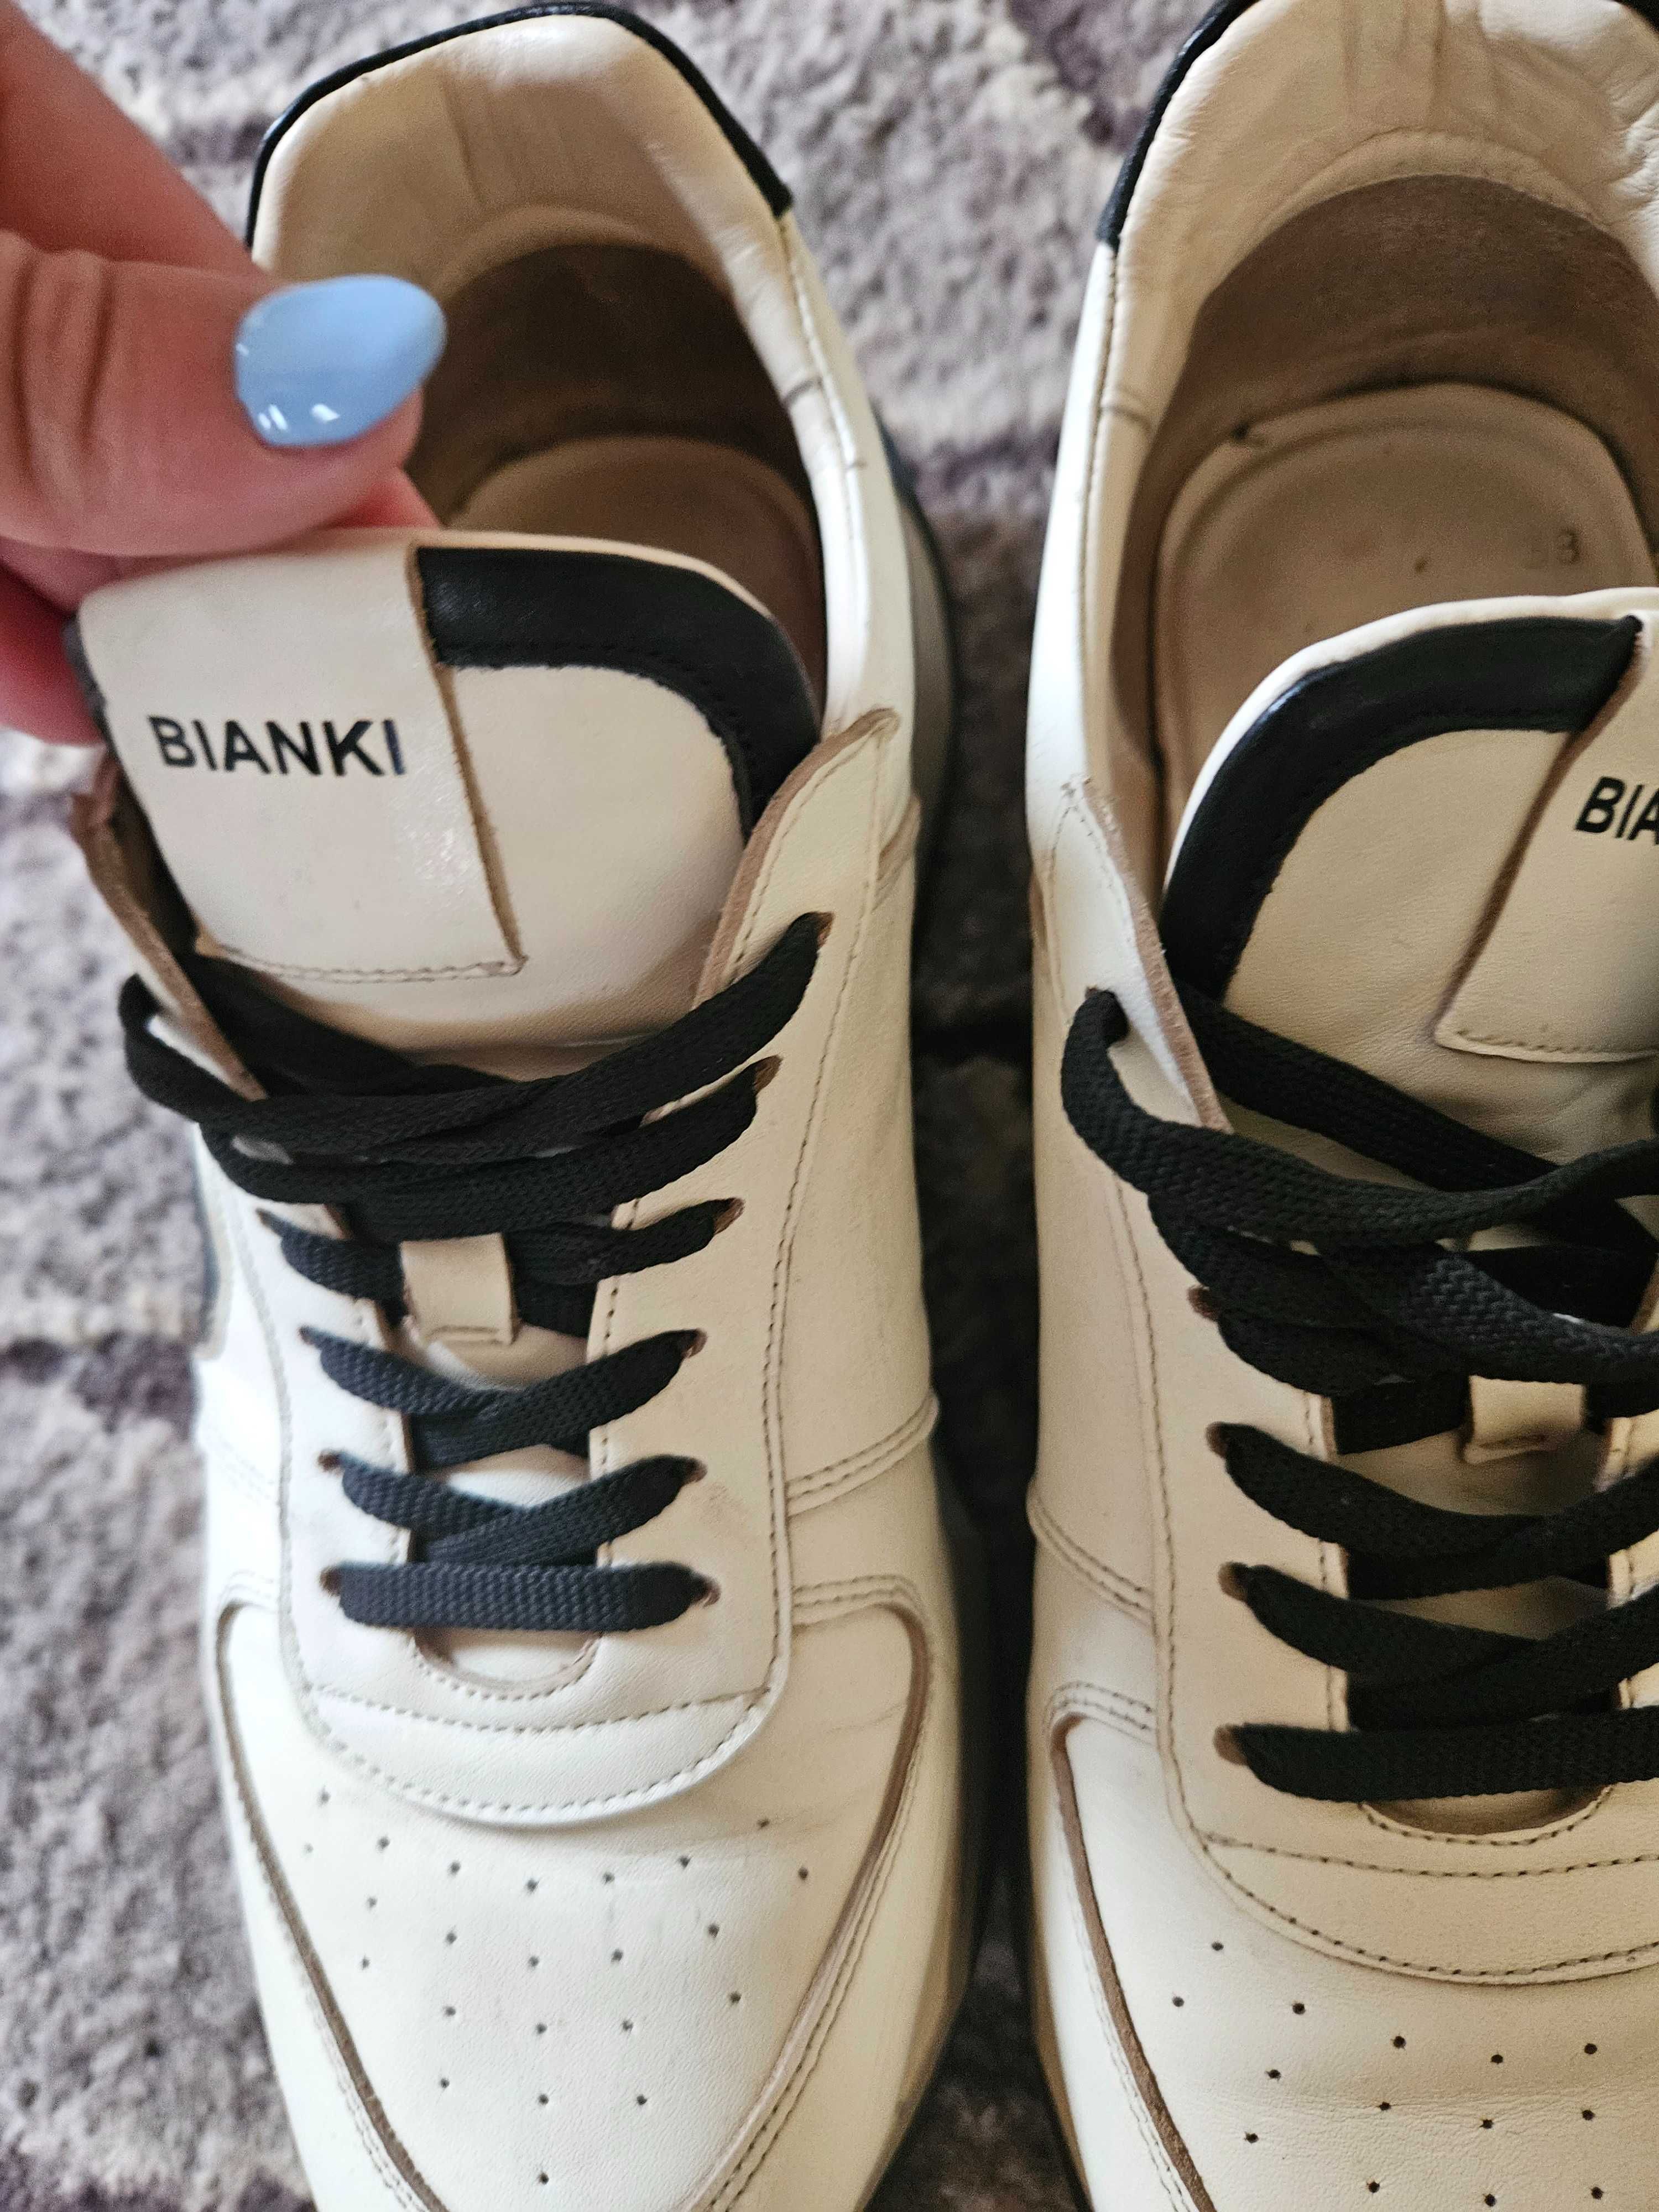 Дамски обувки Bianki- 38 номер